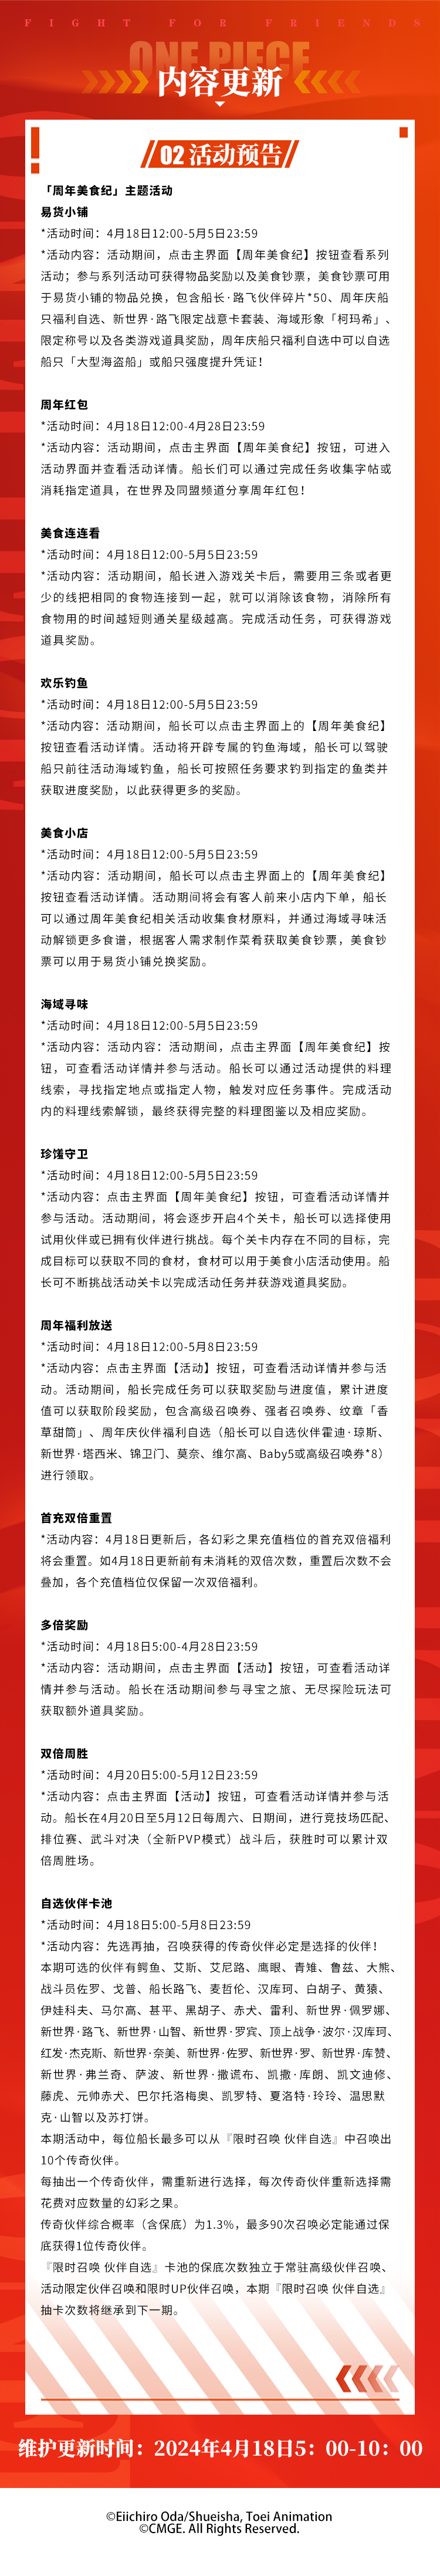 「激斗开幕 三周年庆」版本更新公告